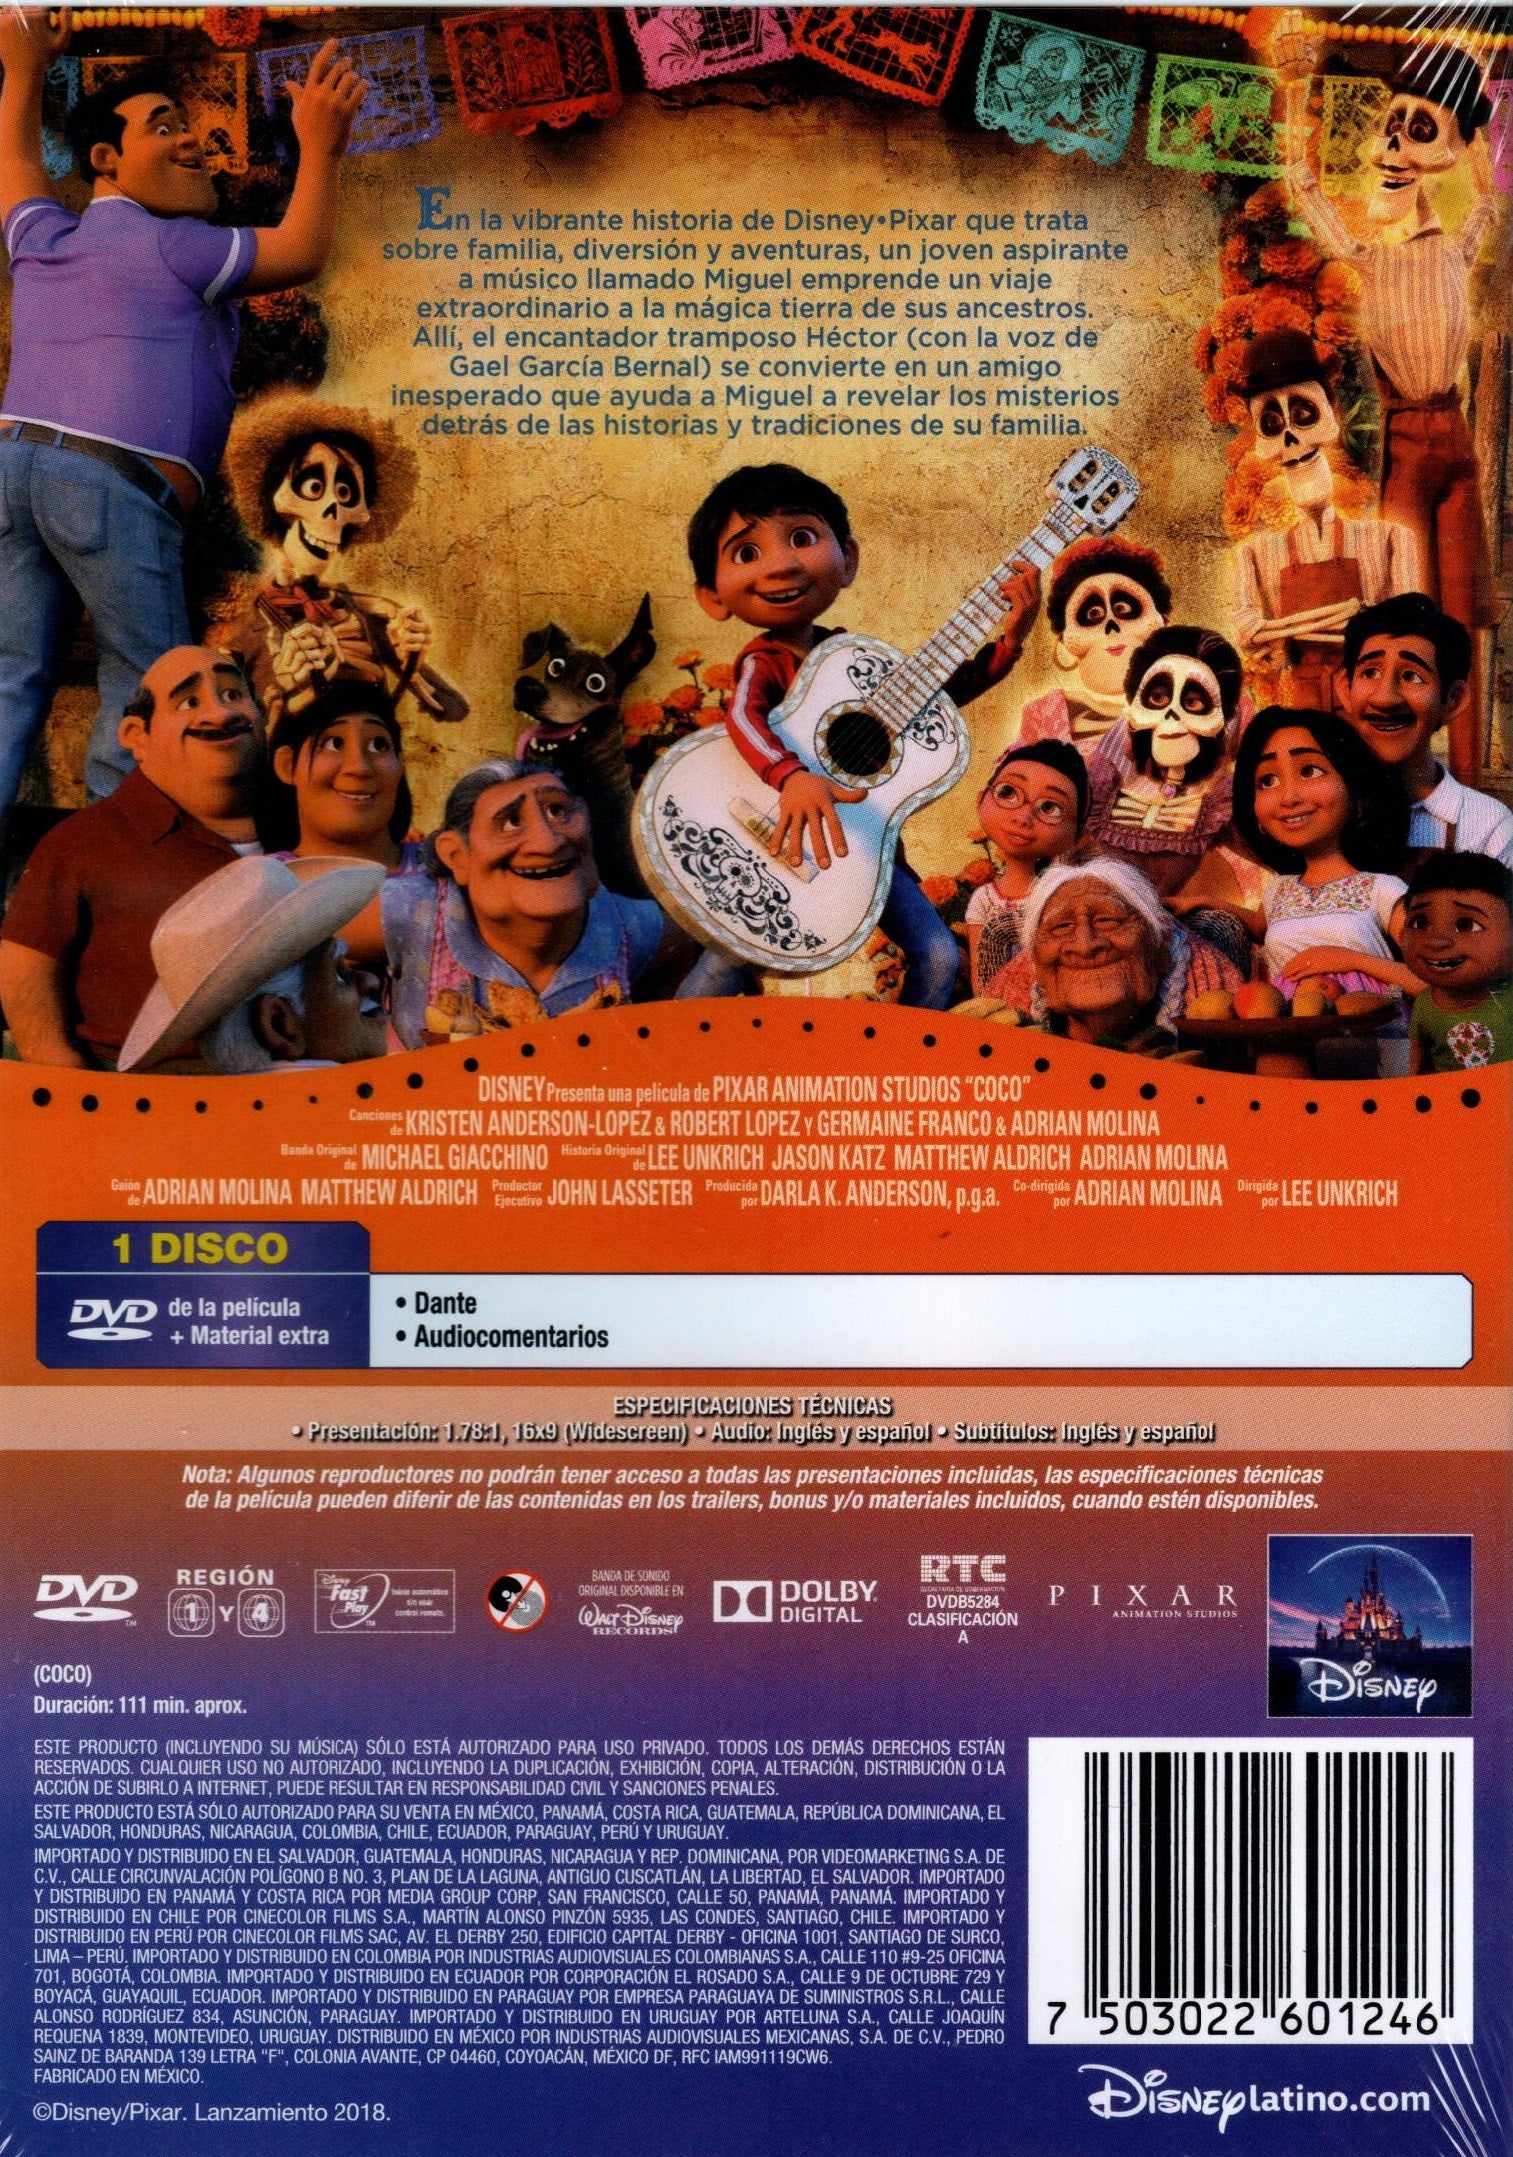 DVD COCO